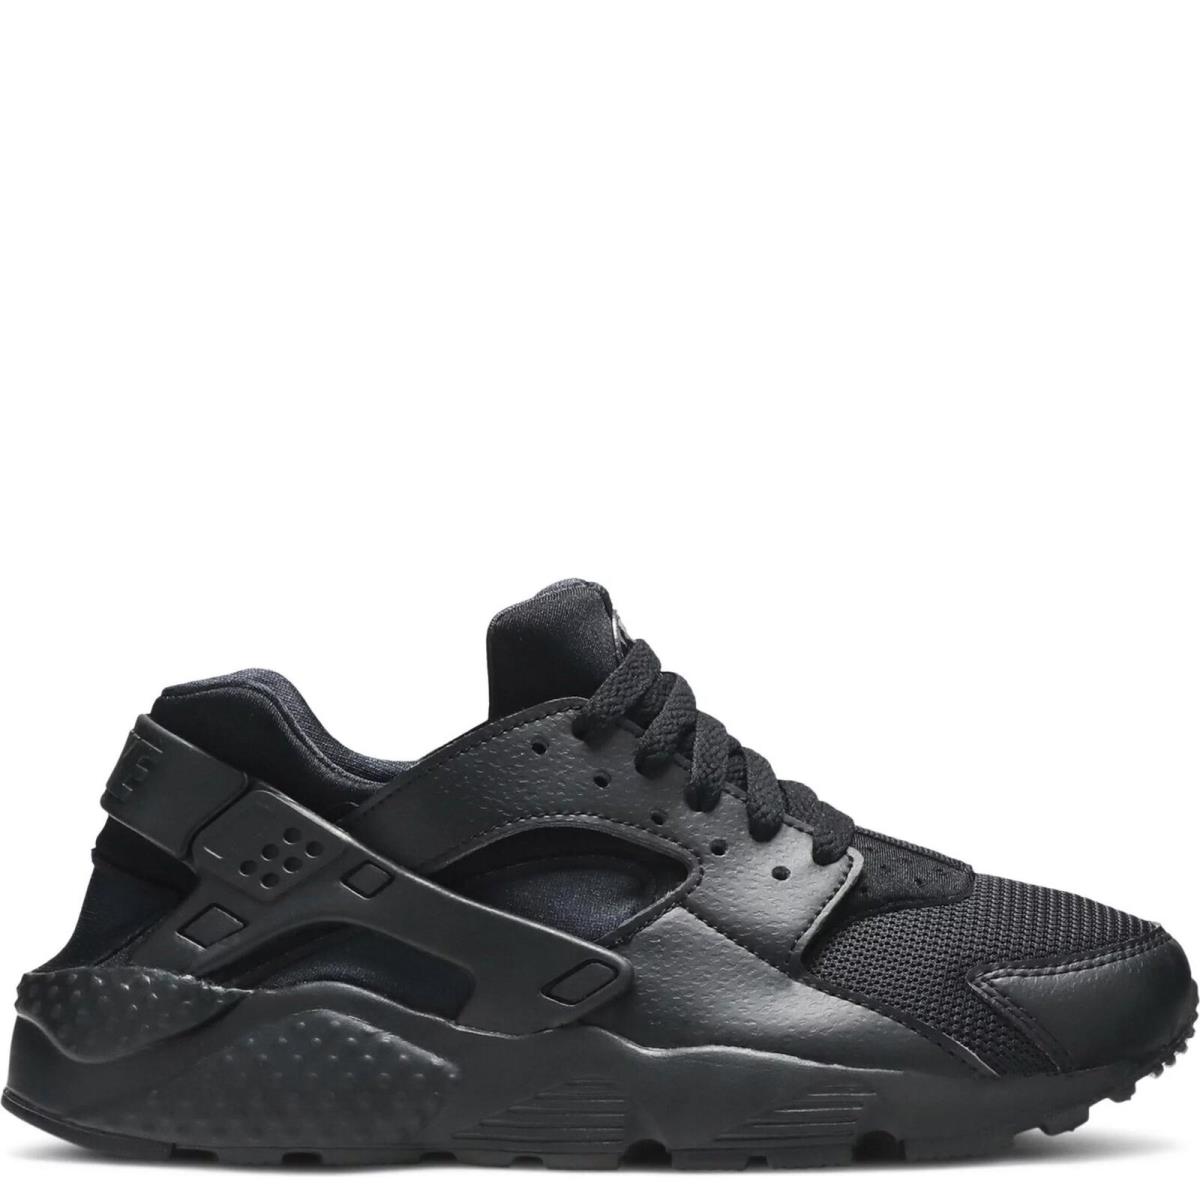 654275-016 Youth Nike Air Huarache Run GS `triple Black` - Black